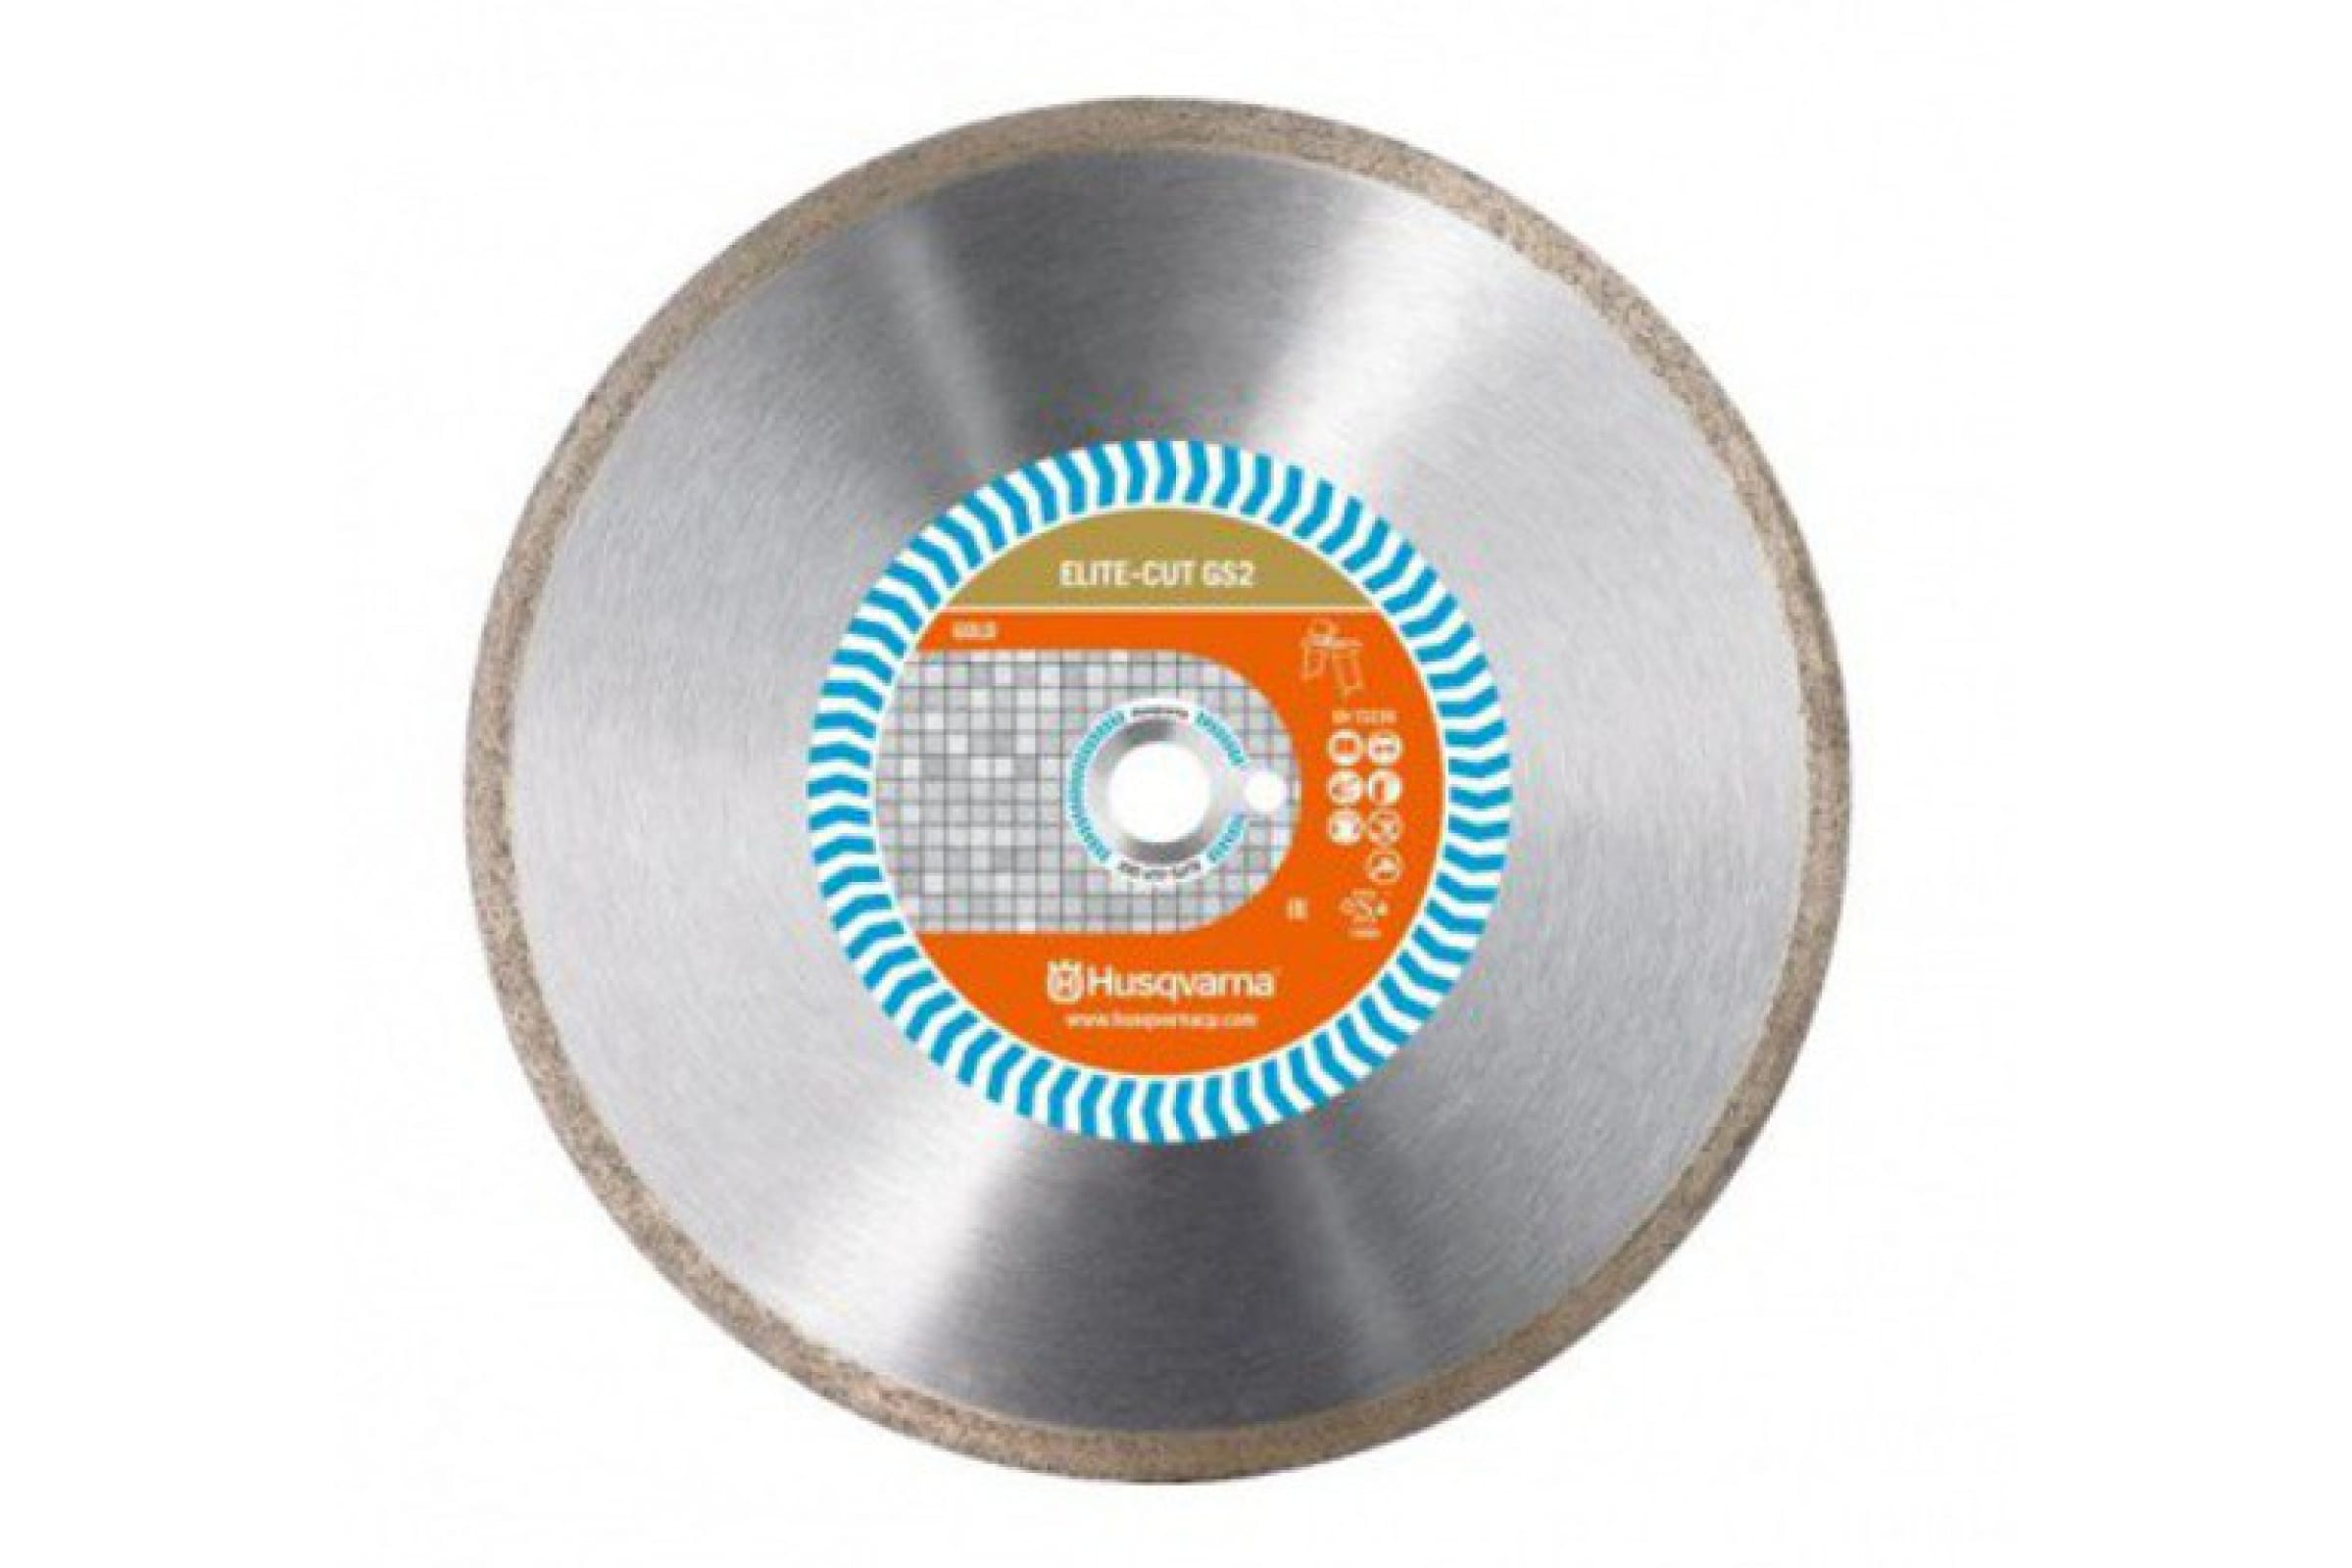 Husqvarna Construction Алмазный диск ELITE-CUTGS2 350 10 25.4 5797981-20 алмазный диск 125х22 2 мм husqvarna construction vari cut s50 5798079 40